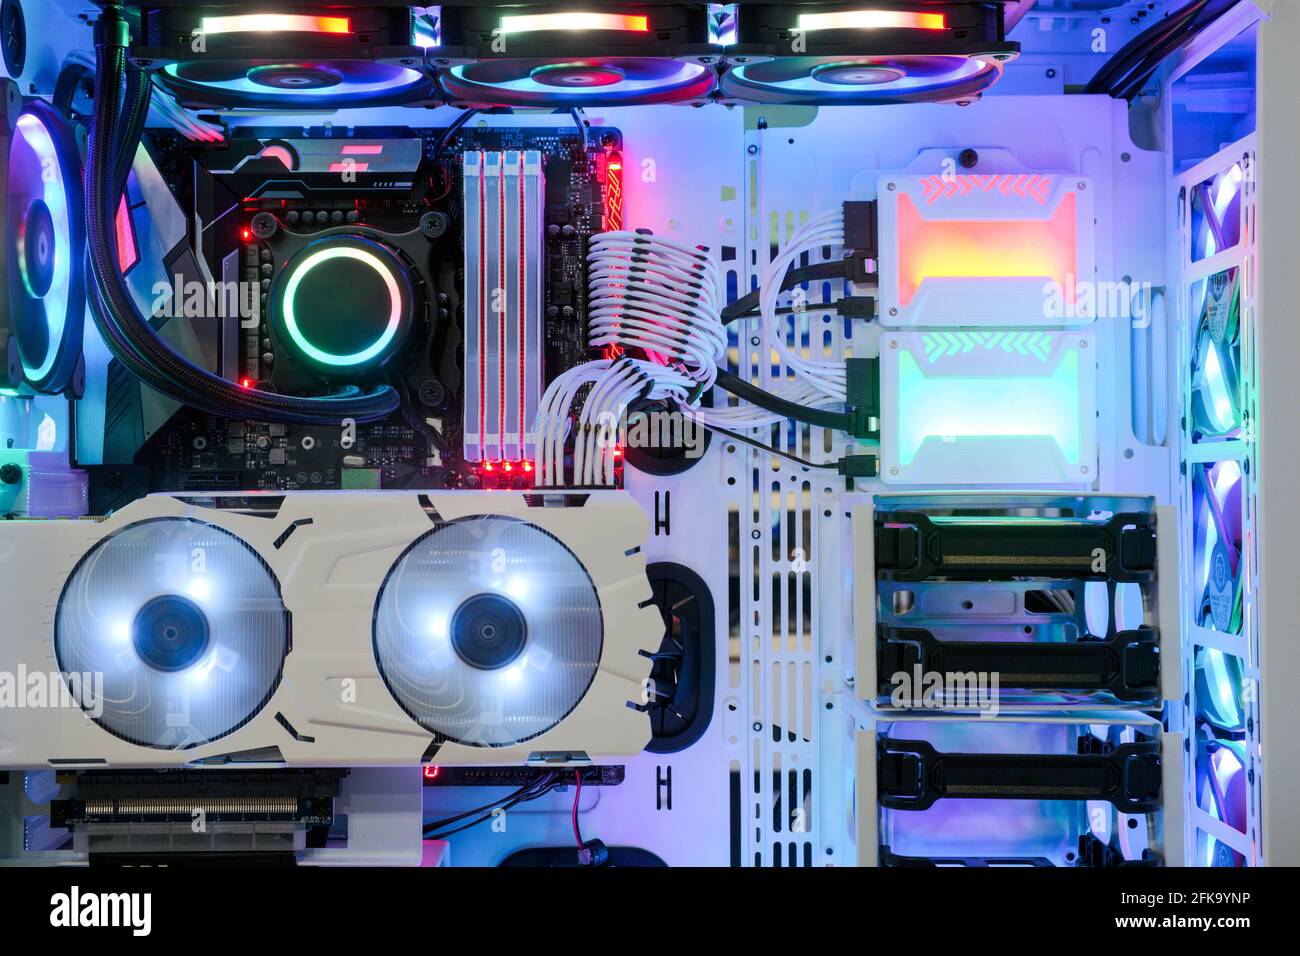 Primo piano e interno PC desktop Gaming and Cooling Fan CPU con LED multicolore RGB mostra lo stato in modalità di lavoro, case per PC interno Foto Stock